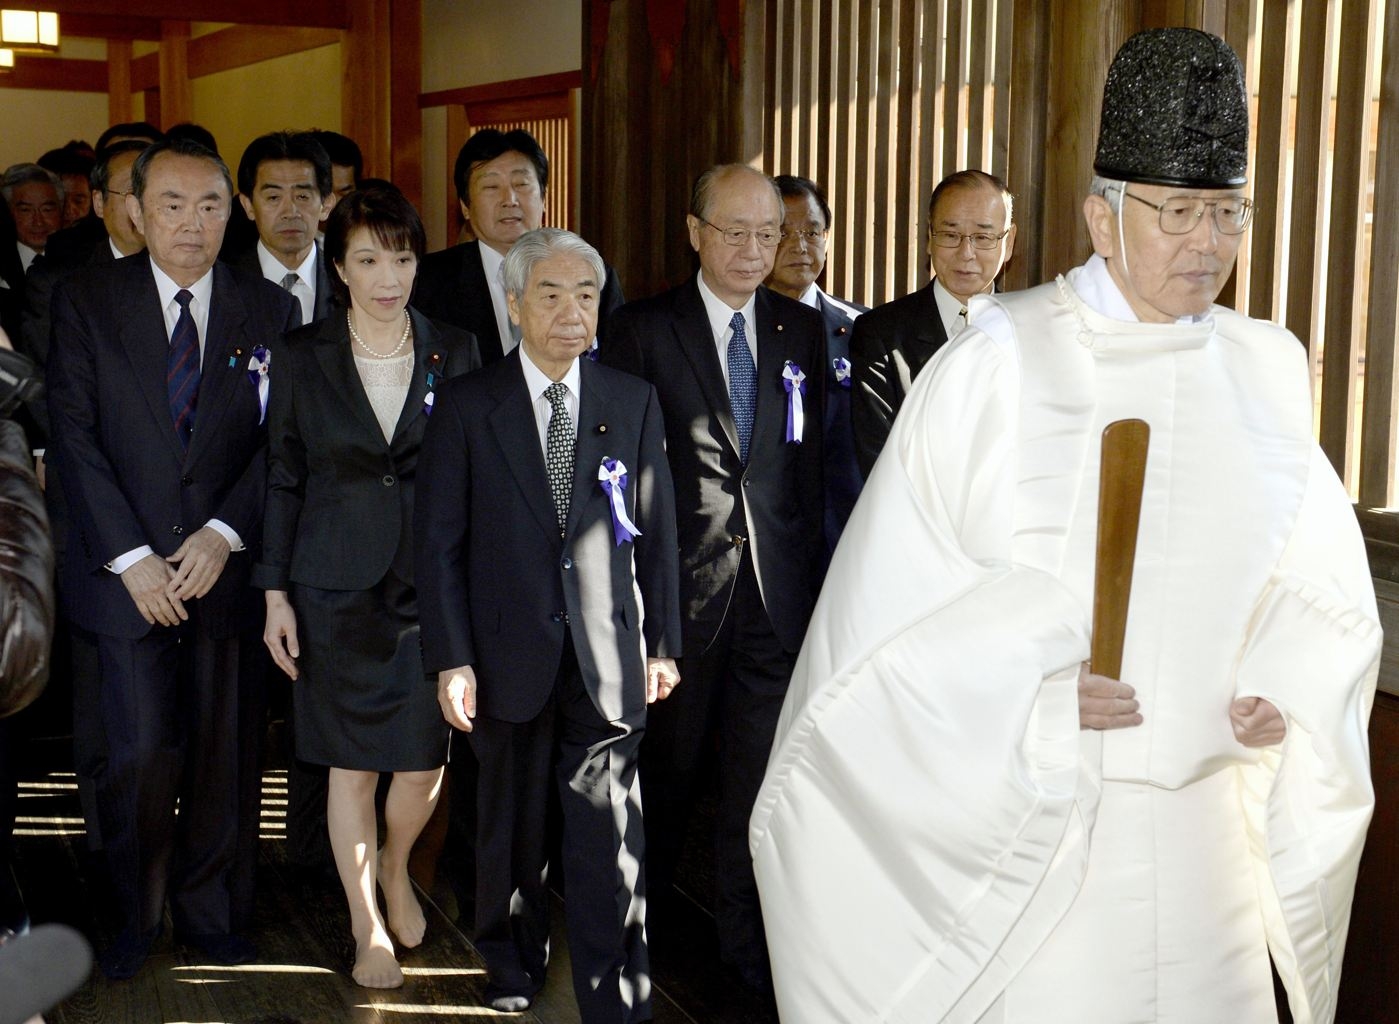 دیدار قانونگذاران ژاپنی از معبد یاسوکونی